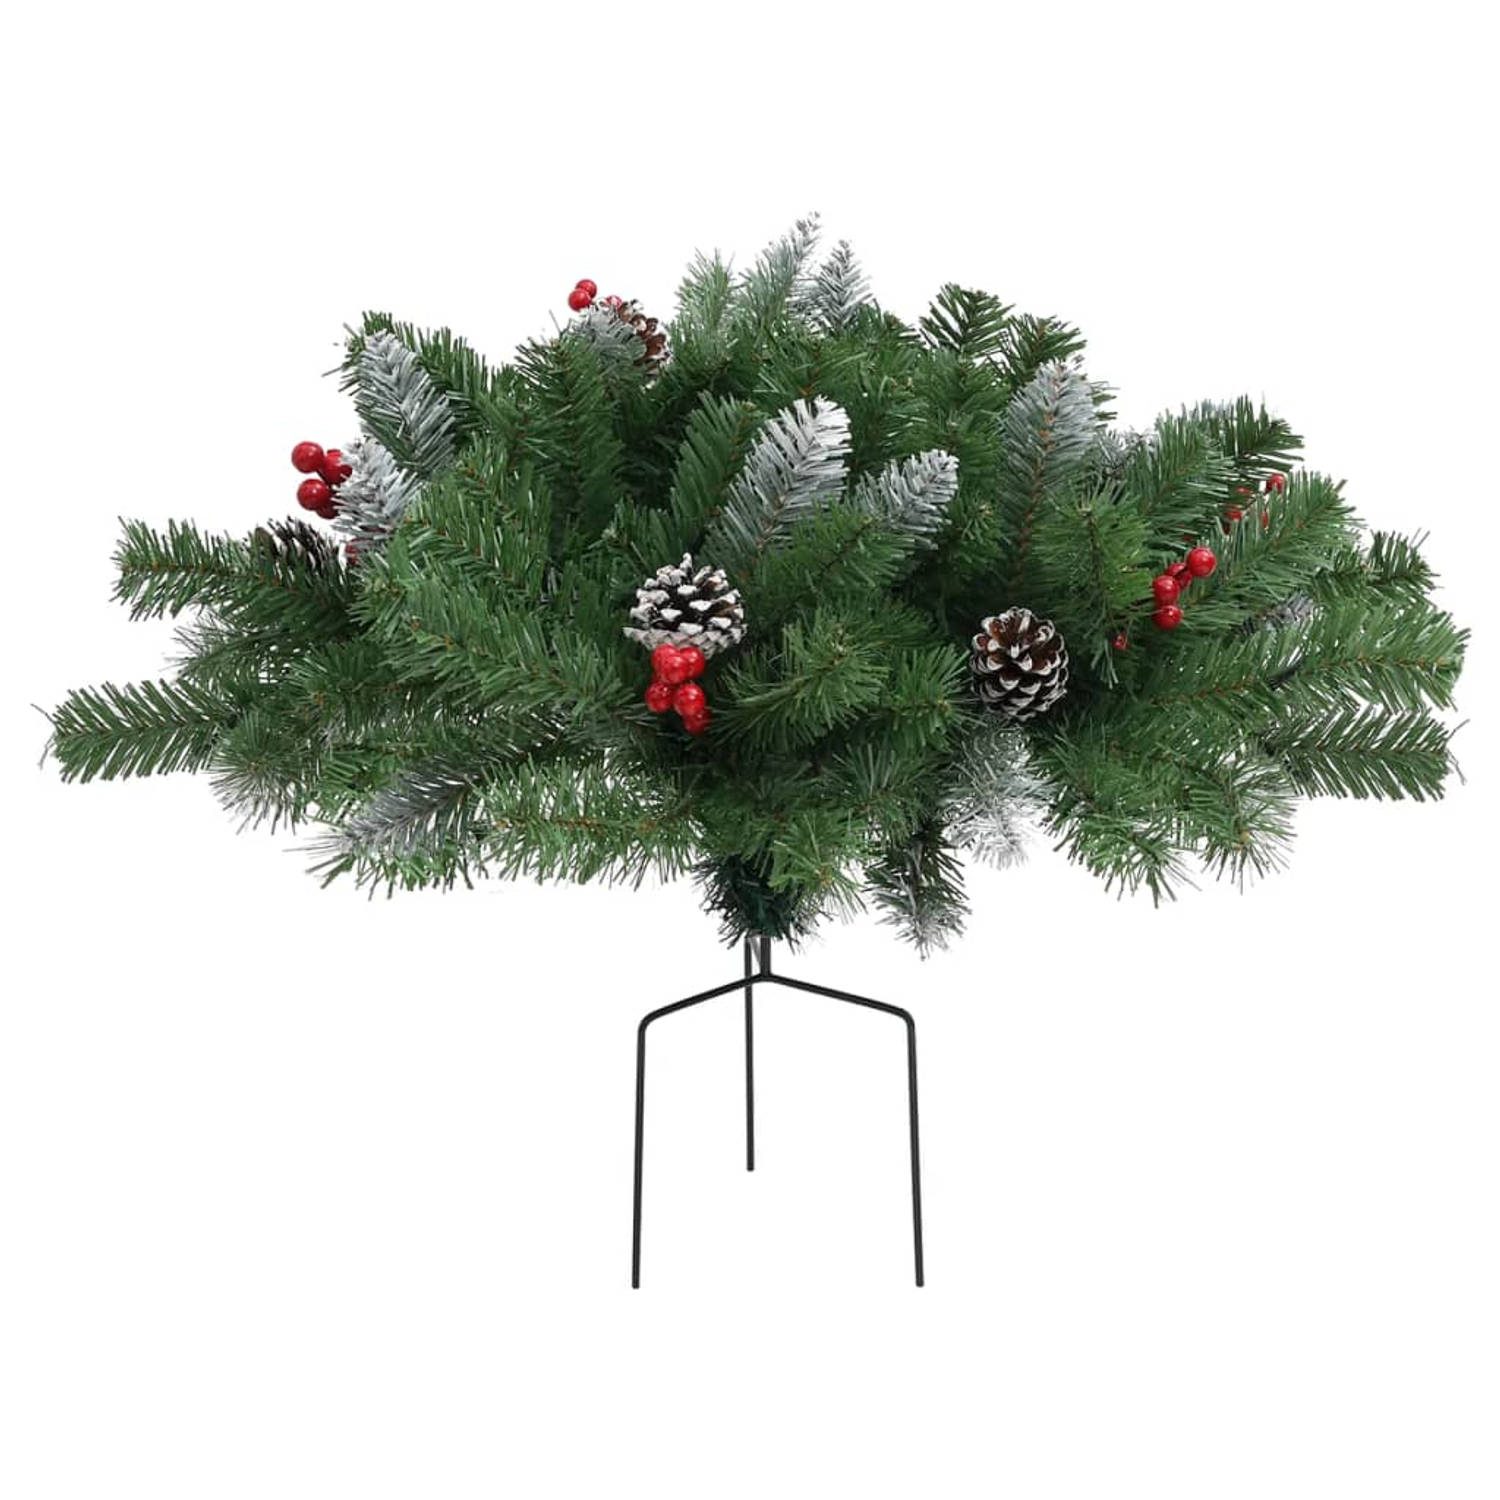 The Living Store Tuinkerstboom 40 cm PVC groen - Decoratieve kerstboom